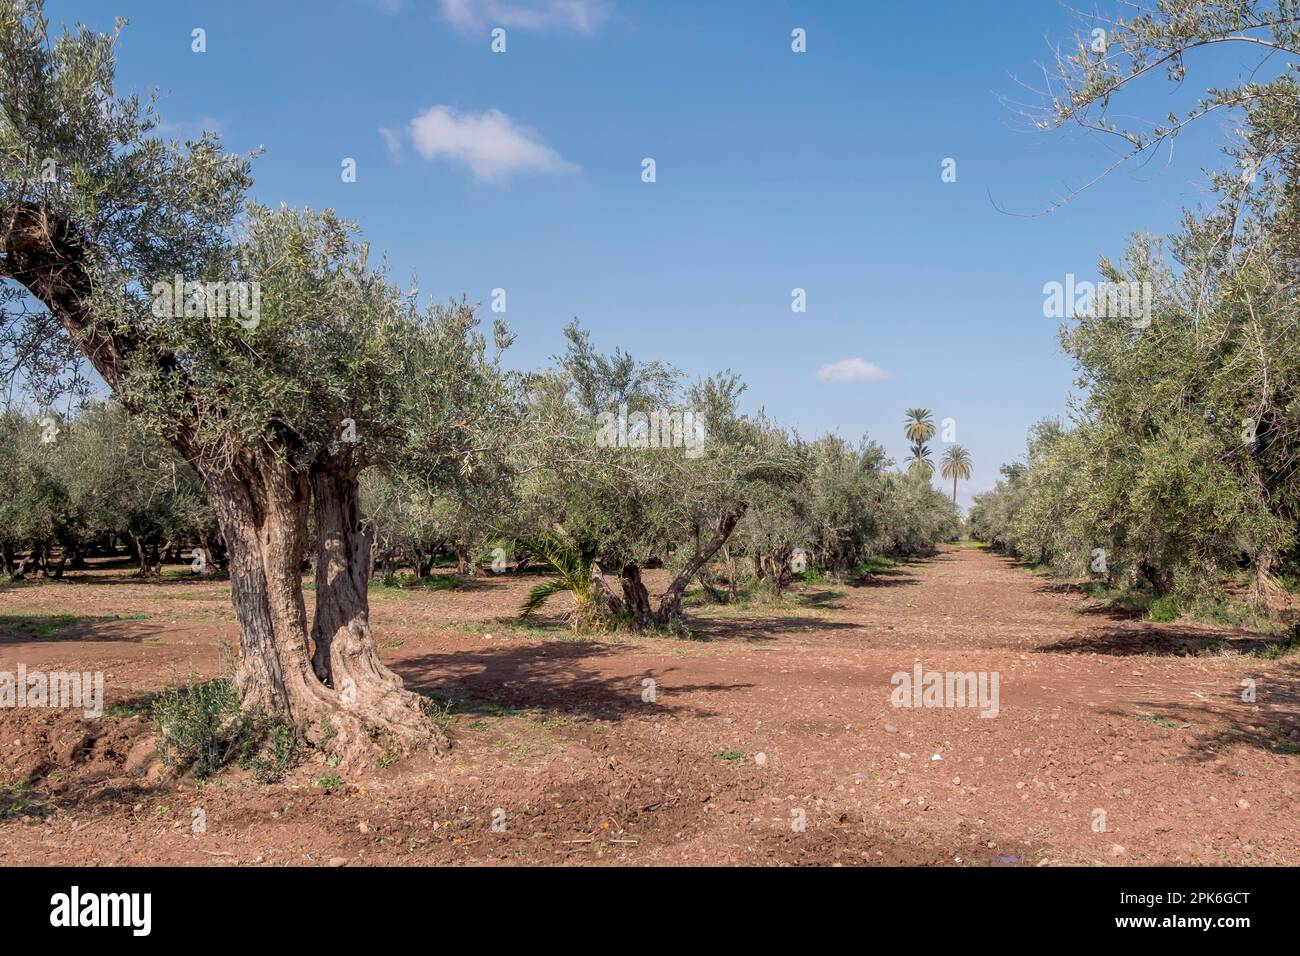 Olivenbäume (Olea europaea) in einem Hain, Marokko Stockfoto